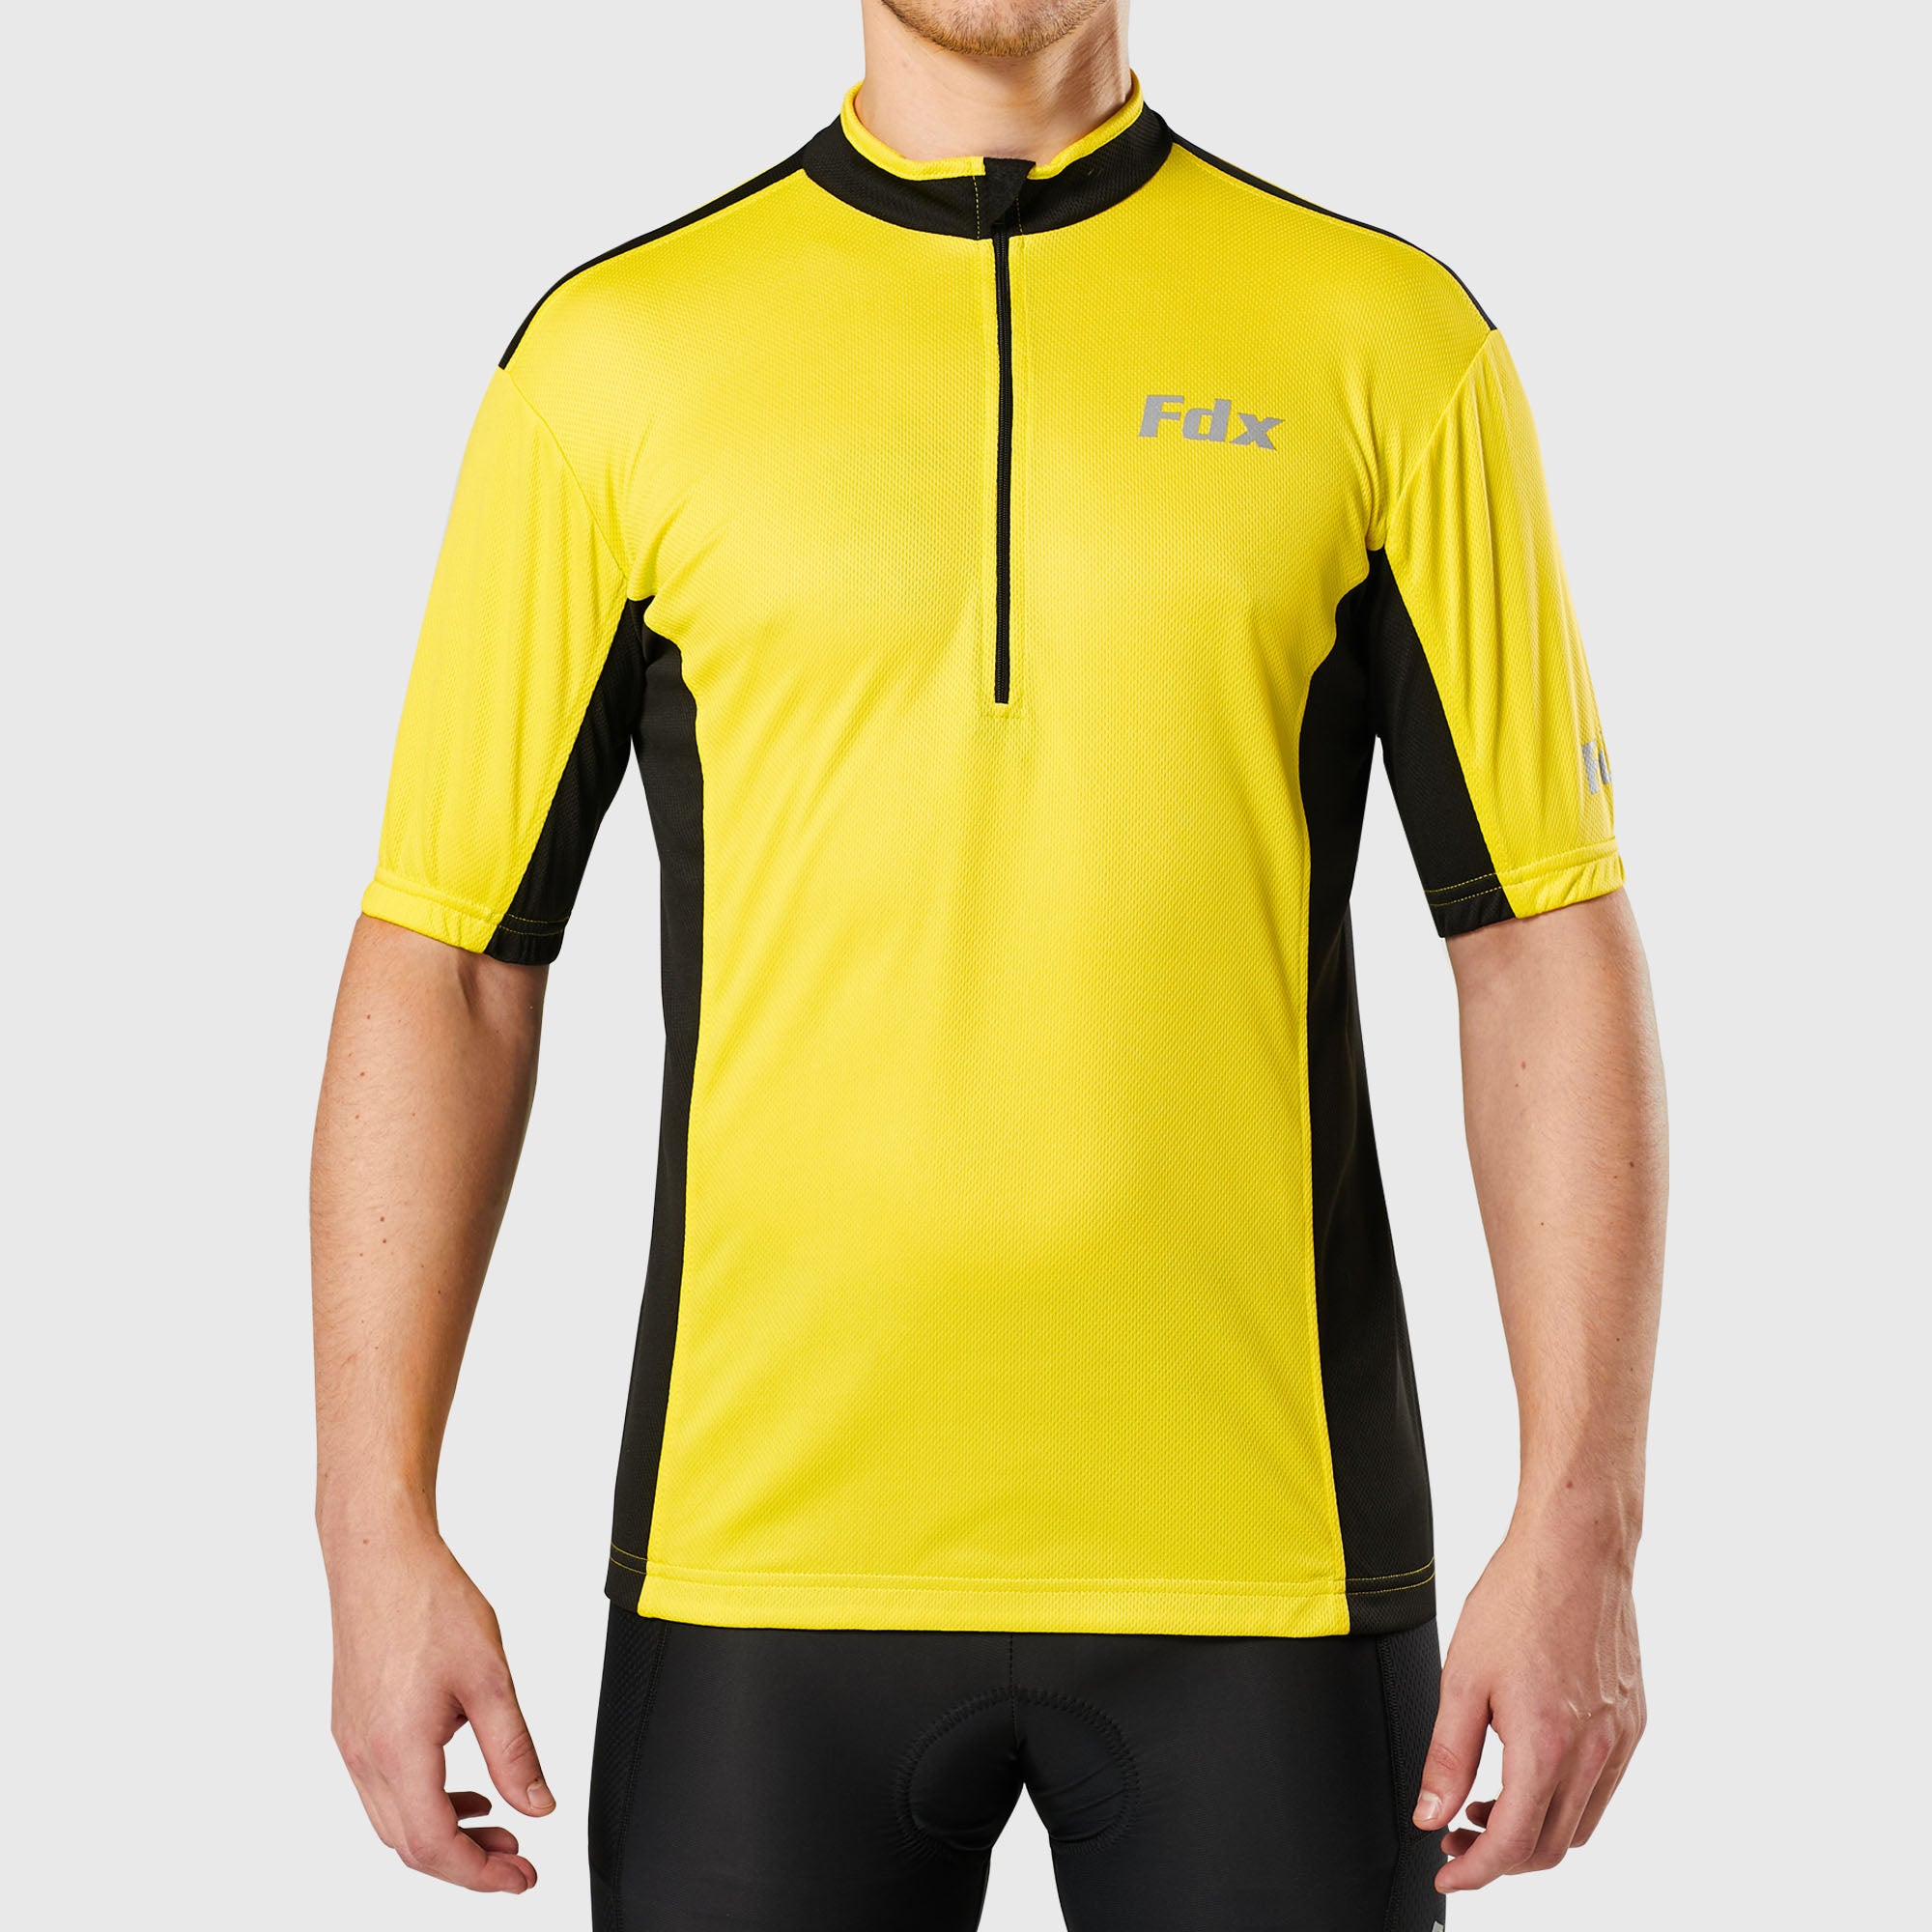 Fdx Mens Yellow & Black Short Sleeve Cycling Jersey for Summer Best Road Bike Wear Top Light Weight, Full Zipper, Pockets & Hi-viz Reflectors - Vertex